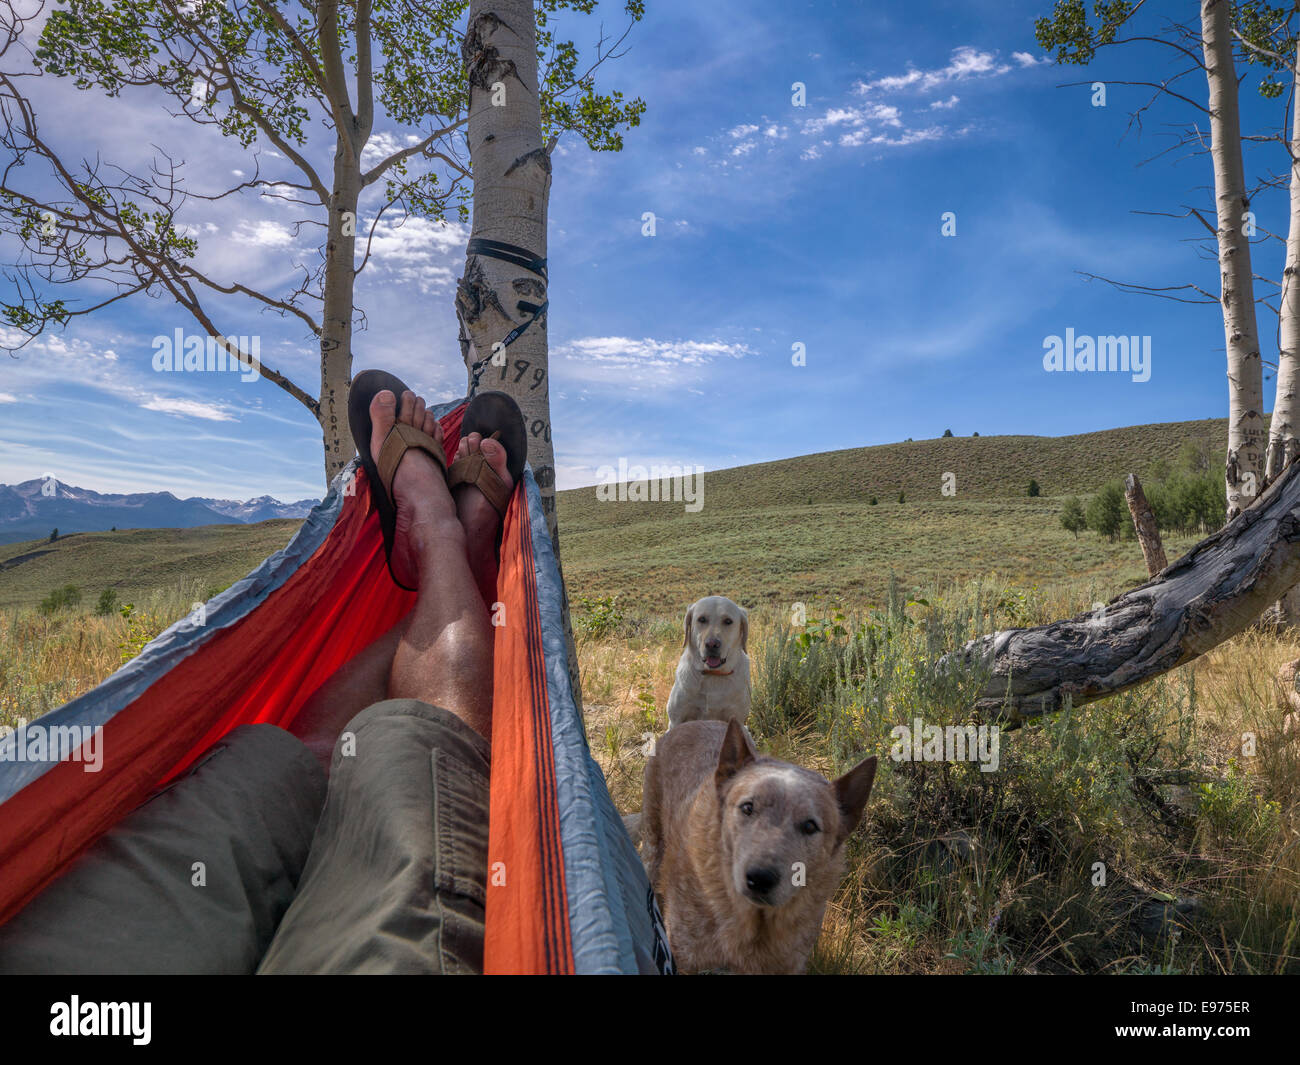 Niente di meglio di una giornata di relax in un'amaca su un costone erboso linea affacciato sul deserto a dente di sega. Foto Stock